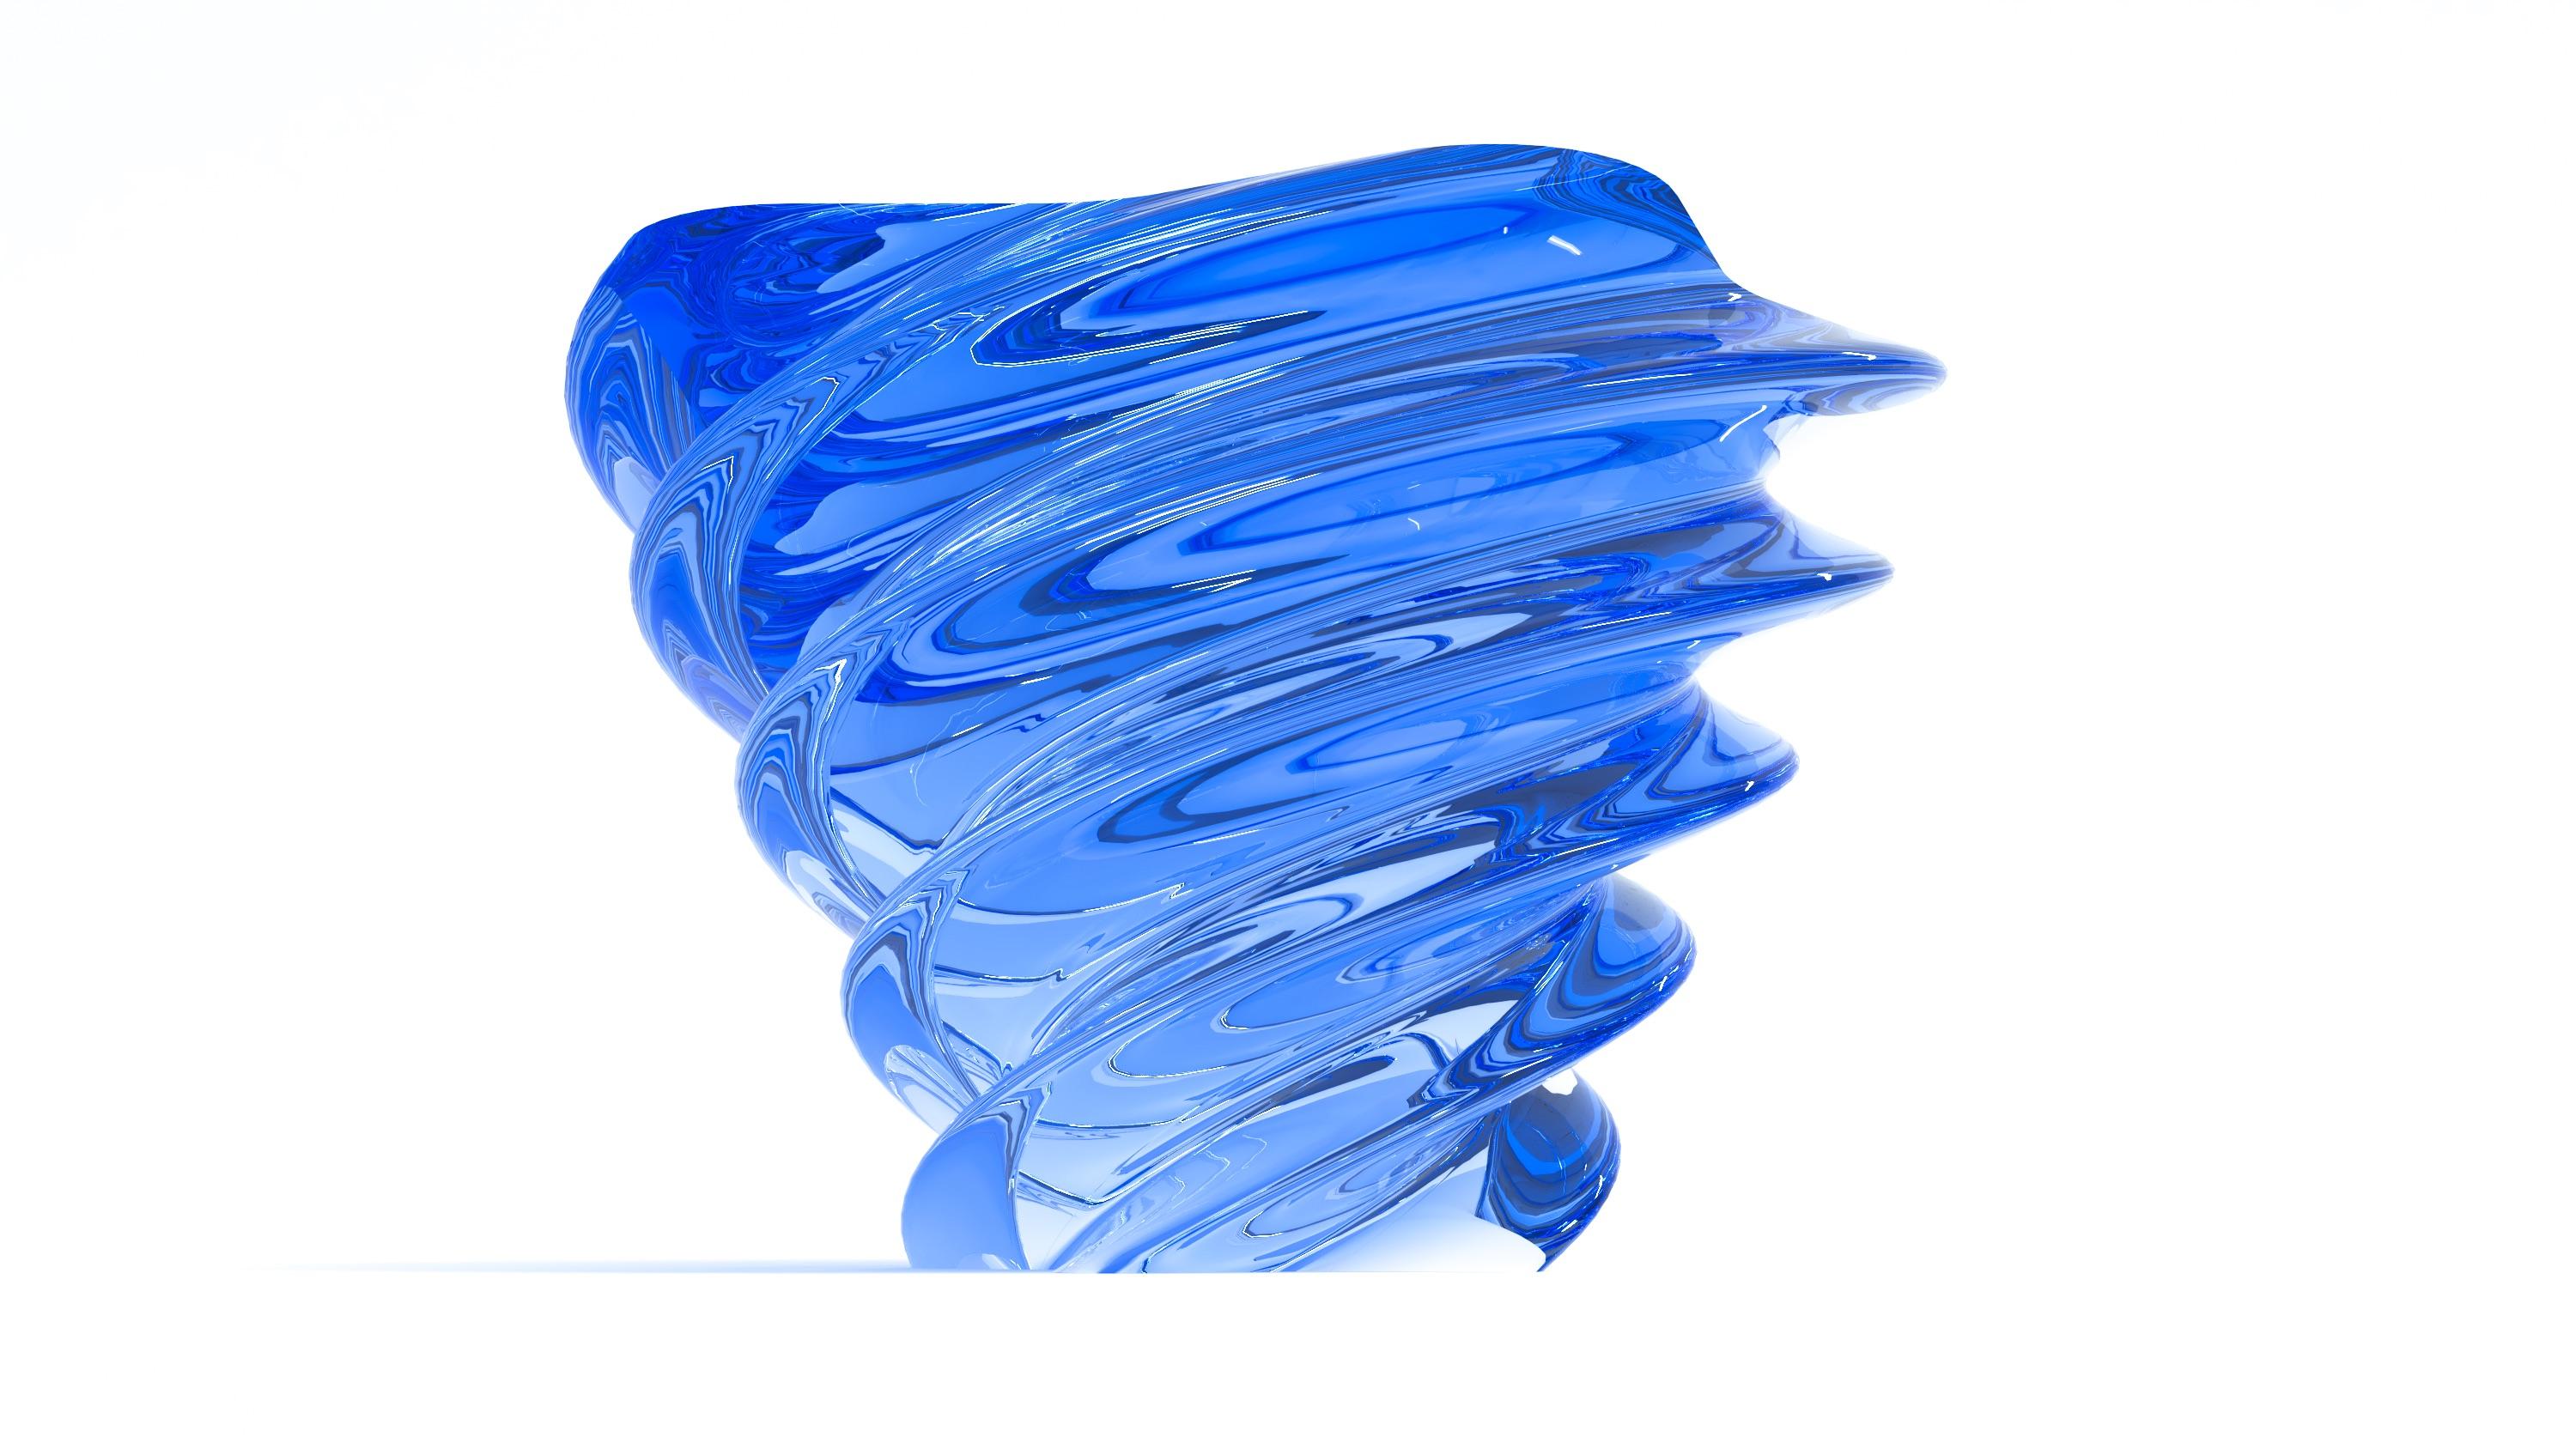 Couchtisch Modell Torchon, vollständig aus farbigem Plexiglas, entworfen von Studio Superego für Superego Editions.
Limitierte Auflage von 9 Stück.

Biographie:
Superego editions wurde 2006 gegründet und führt eine konstante Forschungstätigkeit im